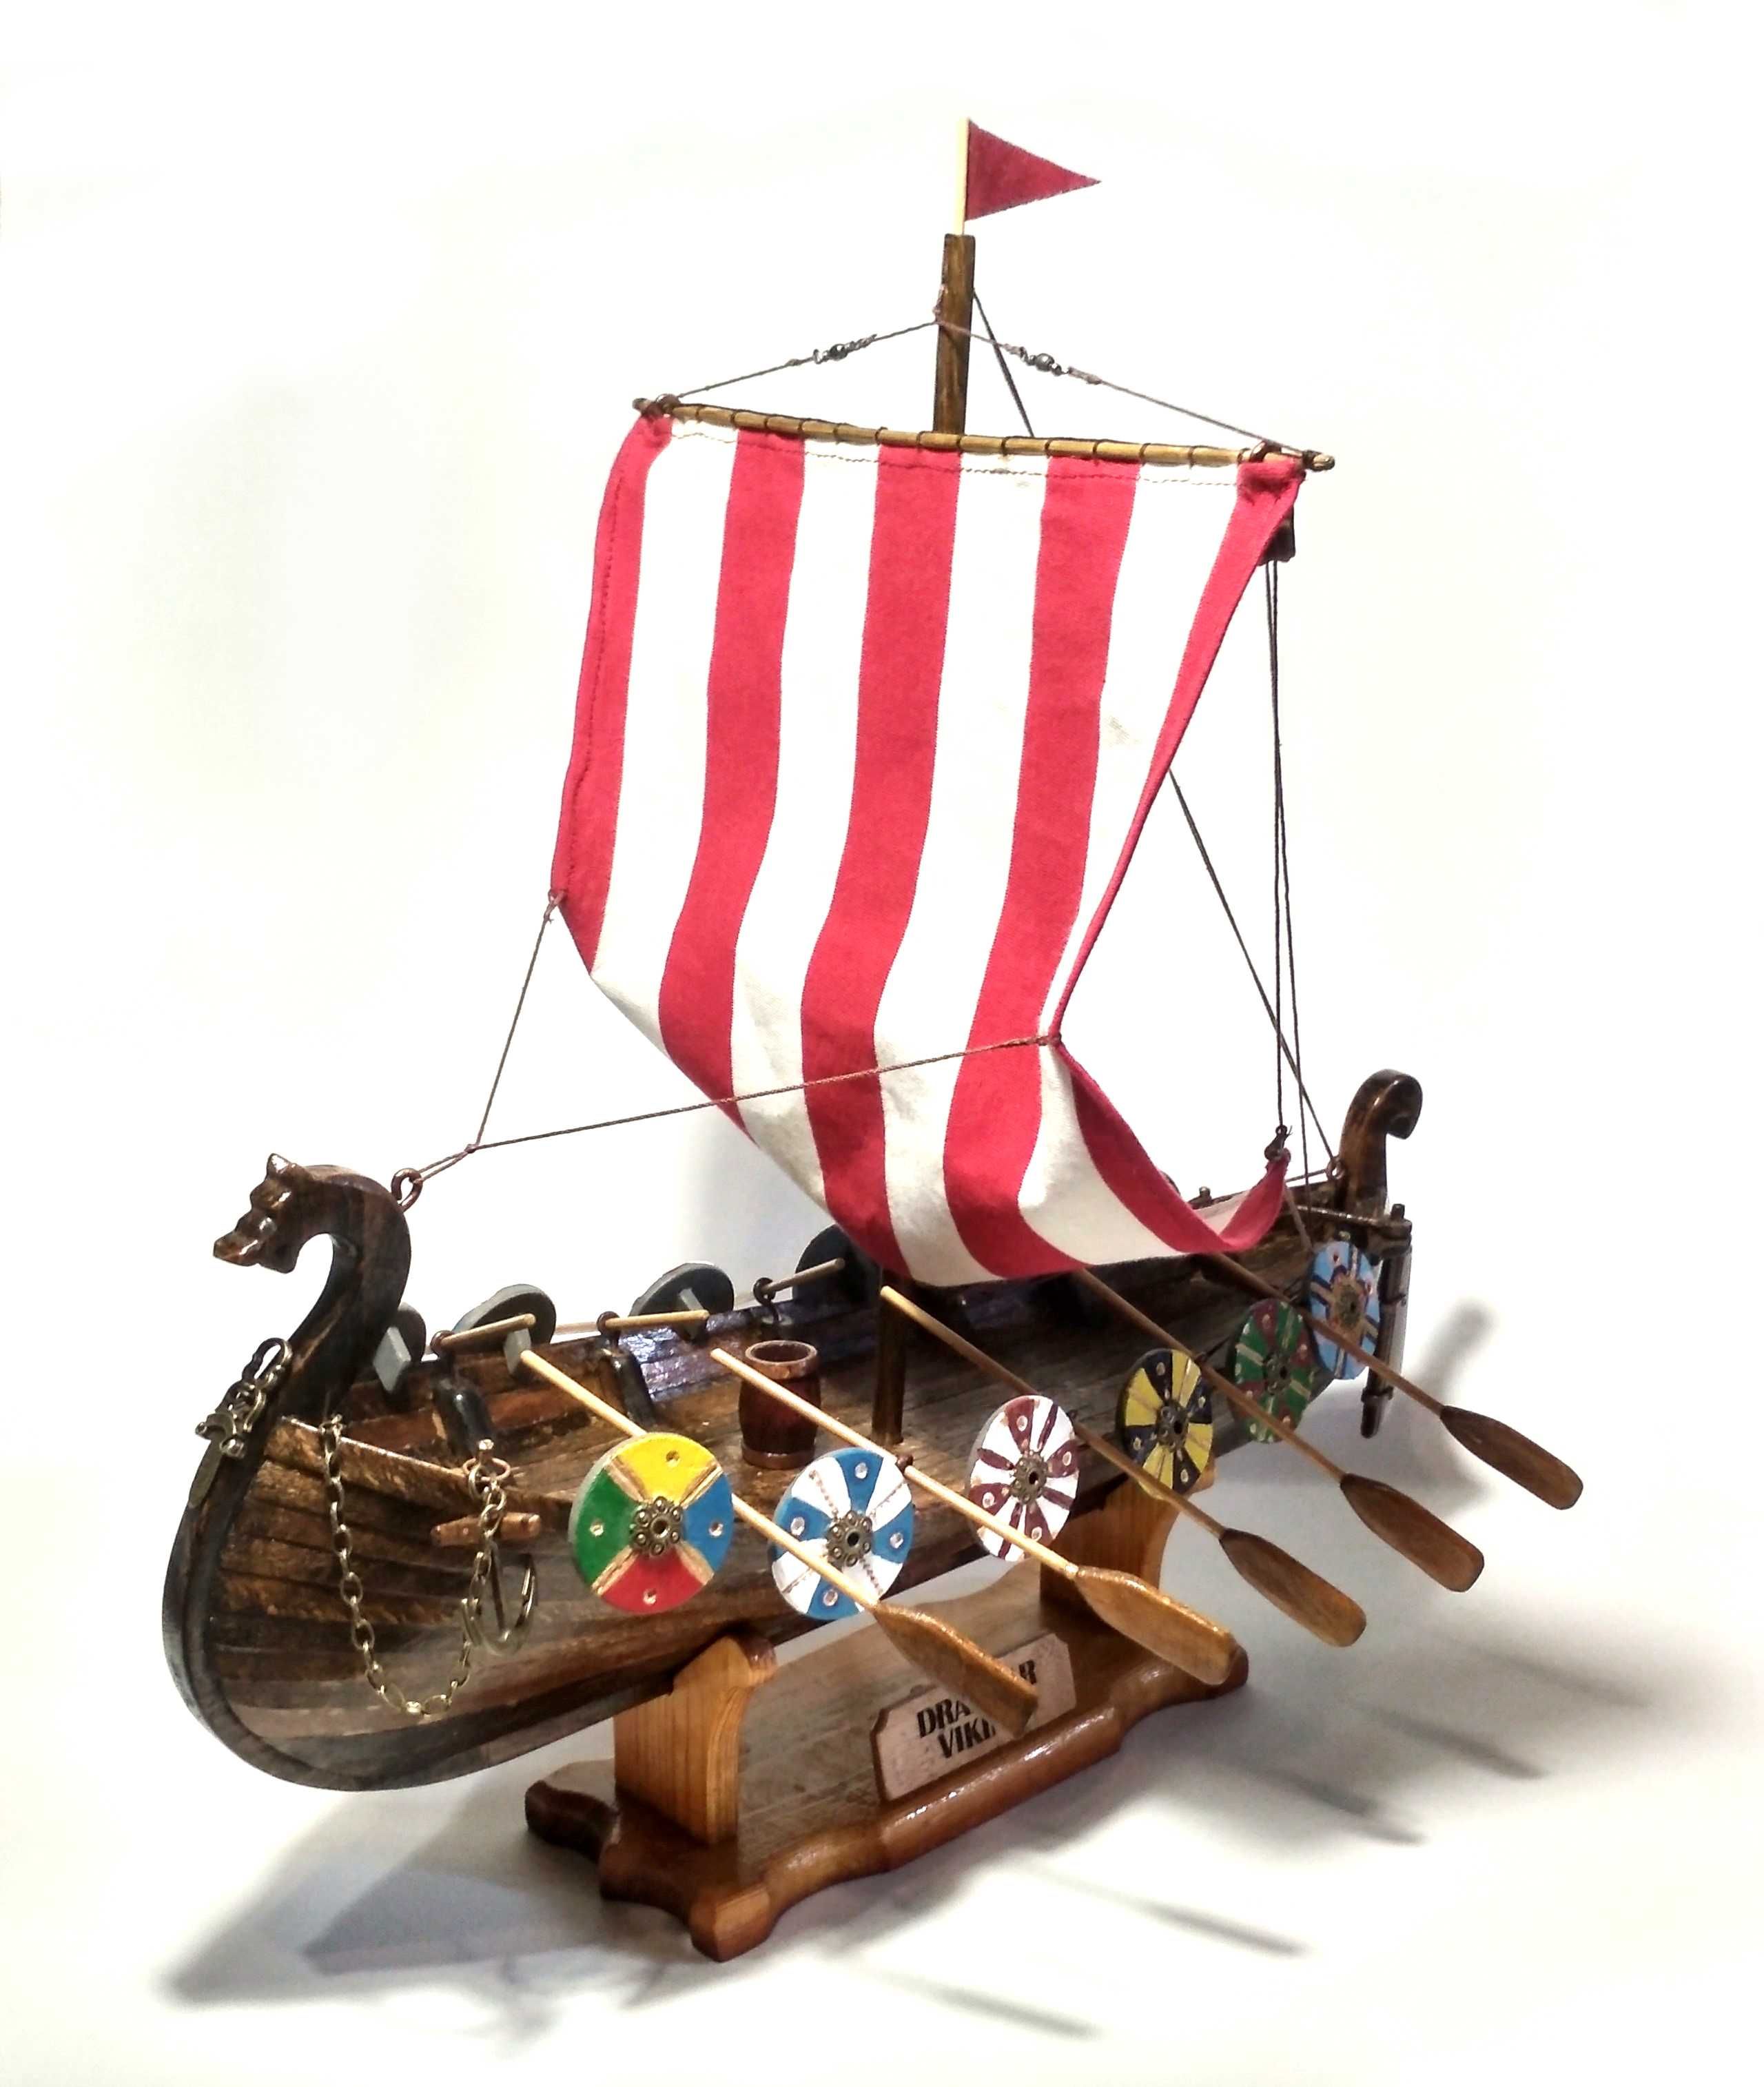 Корабль Викингов Драккар. Деревянная модель корабля. Ручная работа